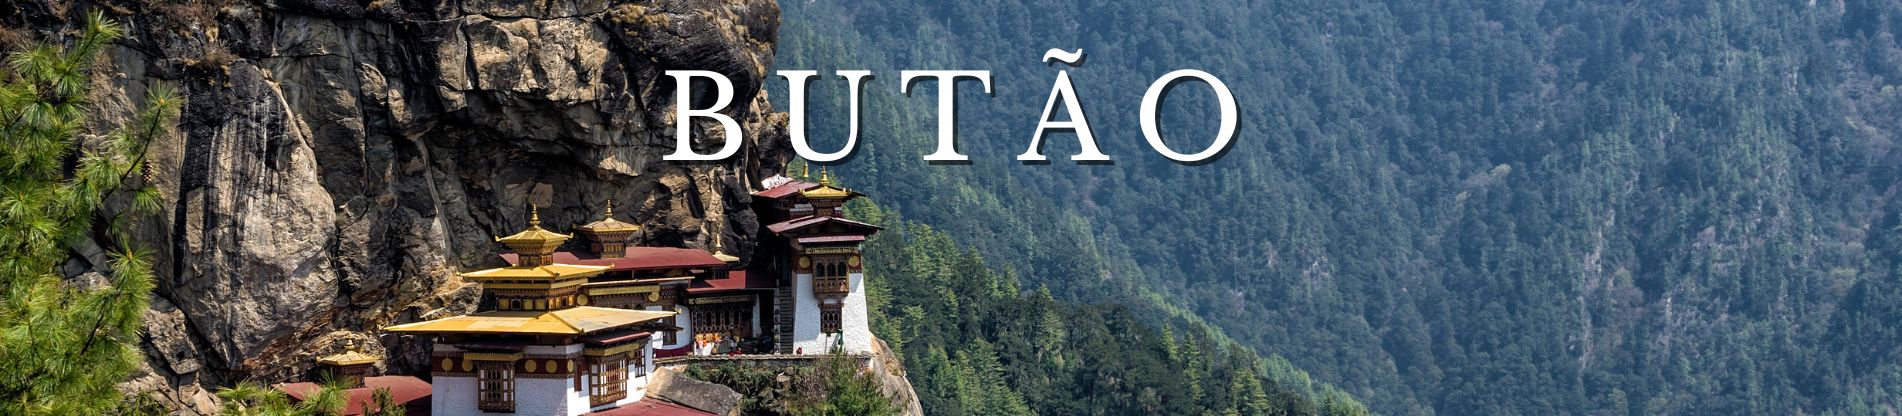 Banner Pacotes para Butão